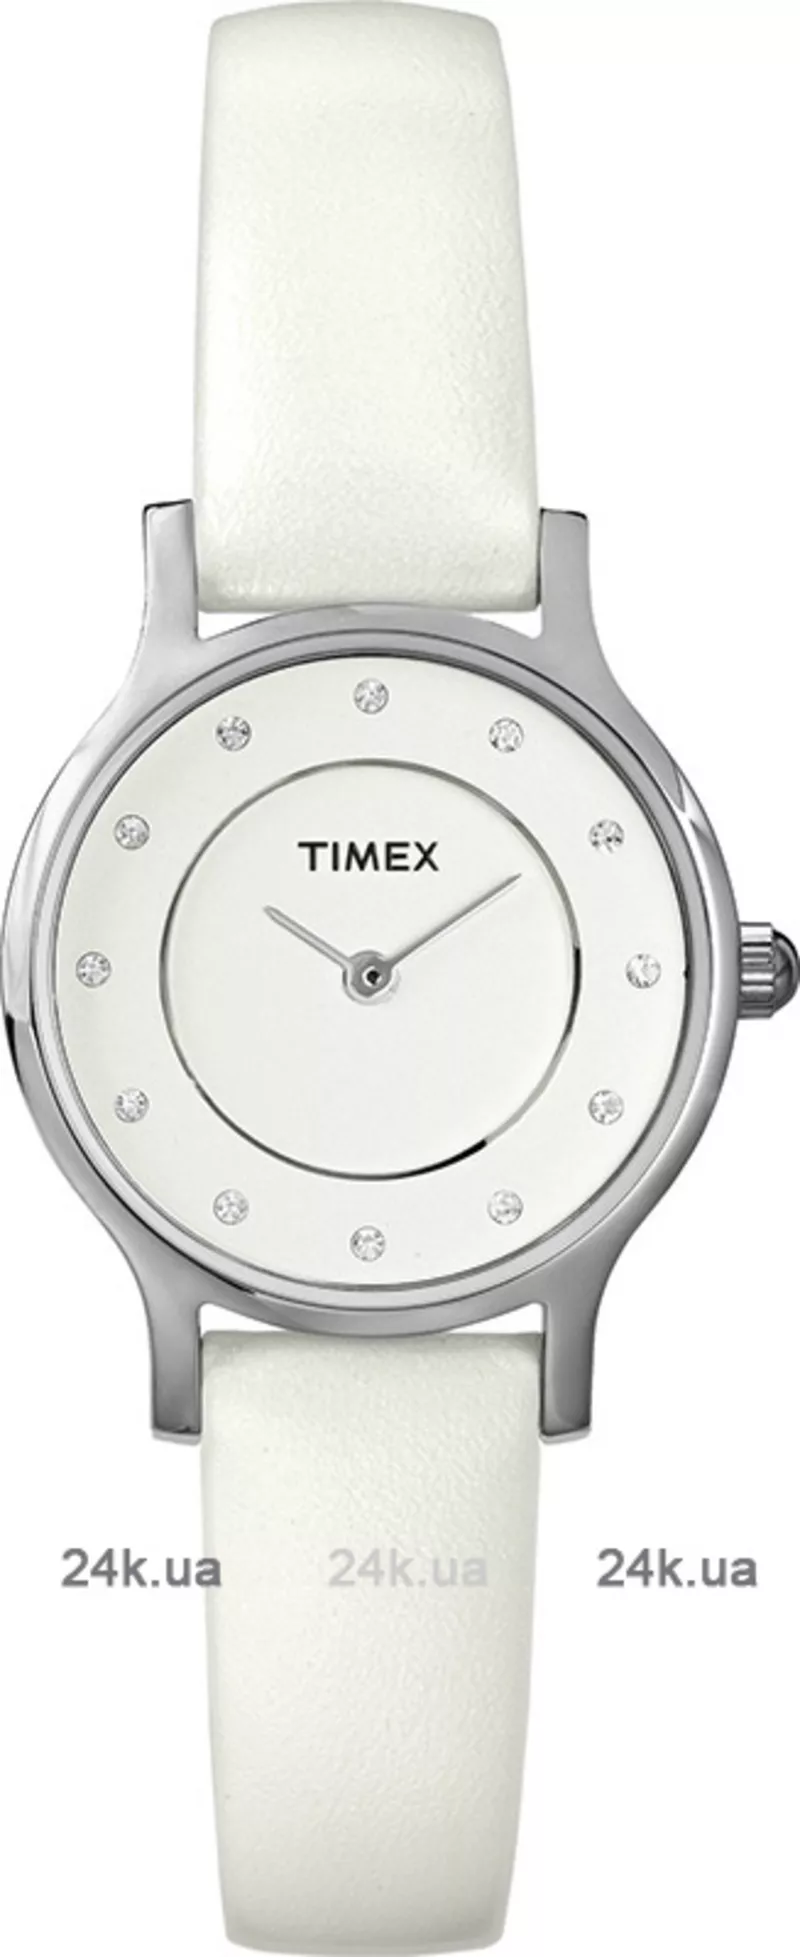 Часы Timex T2P315